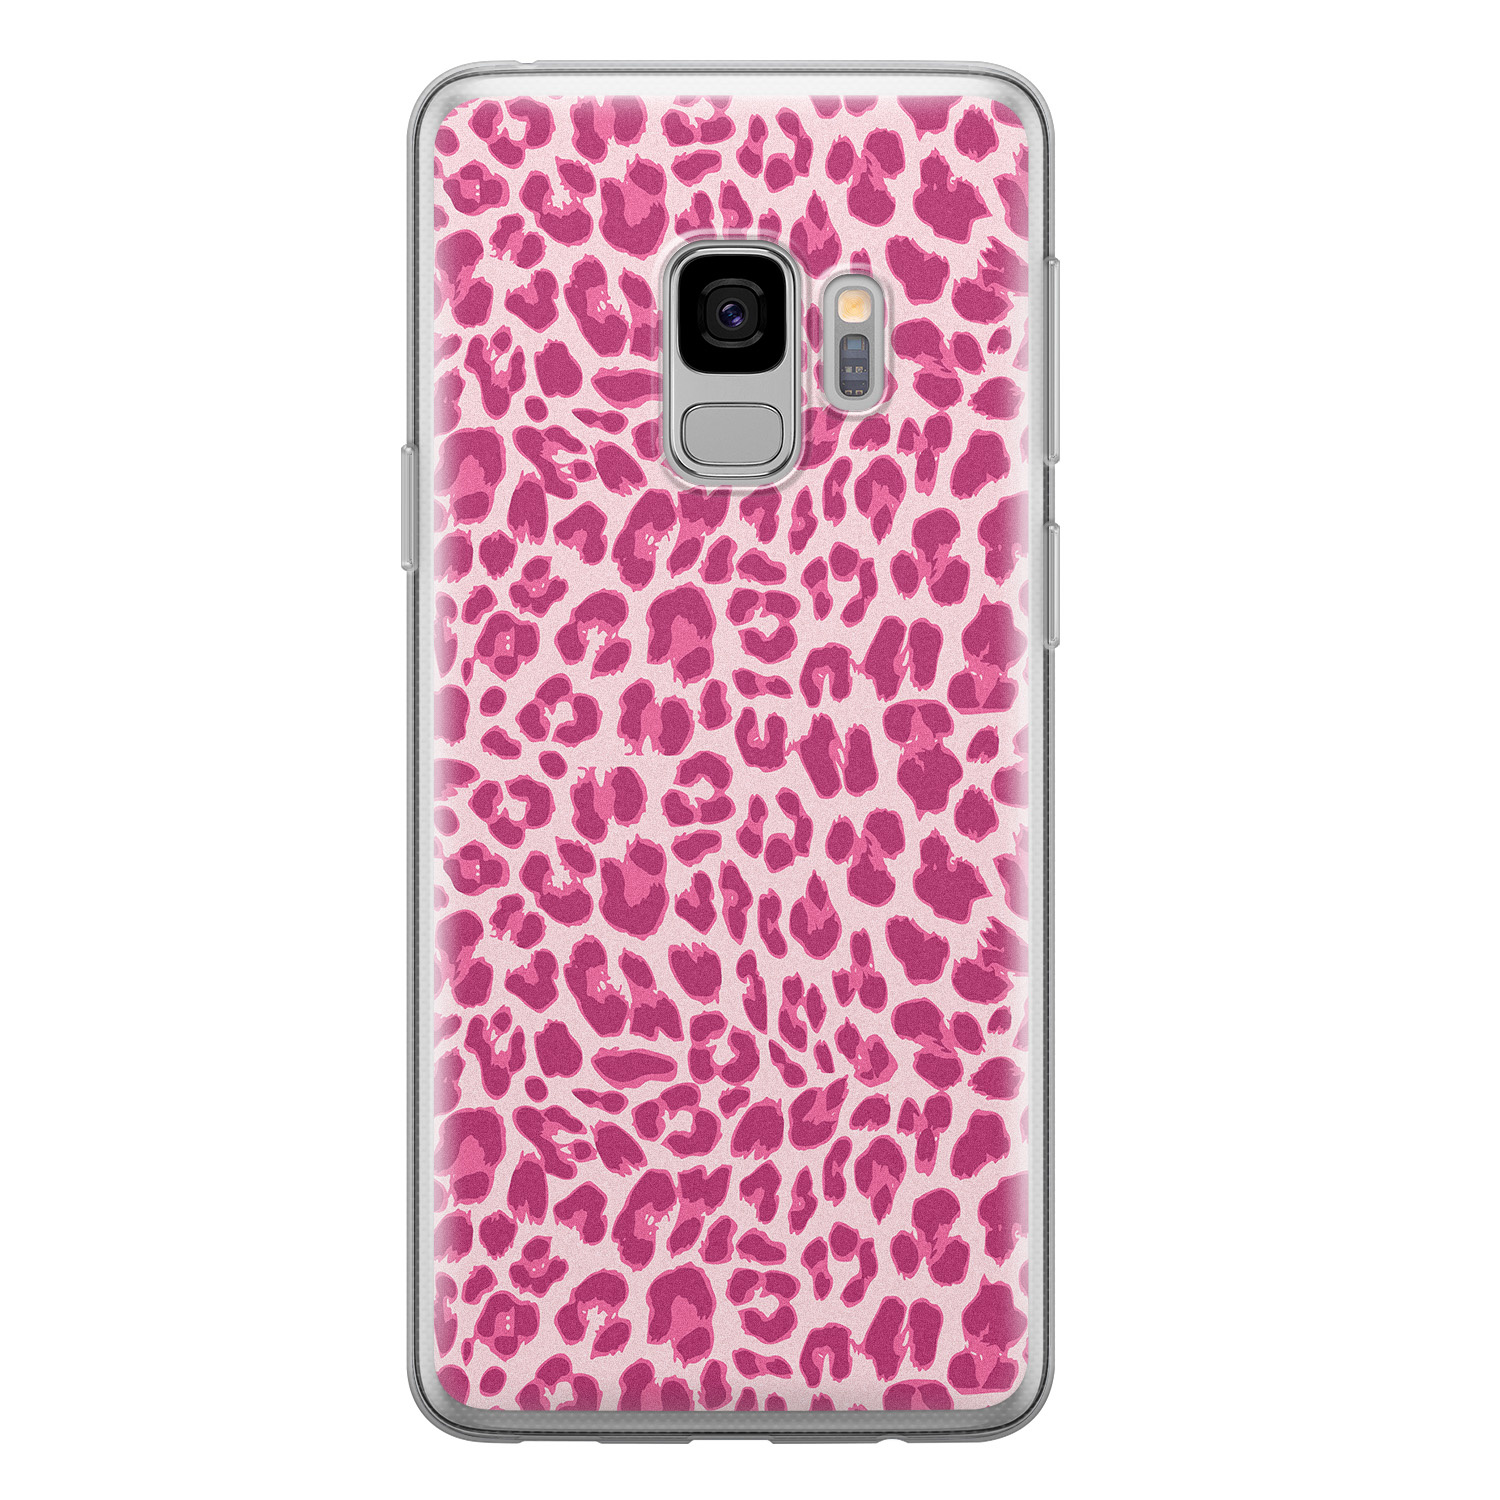 Leuke Telefoonhoesjes Samsung Galaxy S9 siliconen hoesje - Luipaard roze